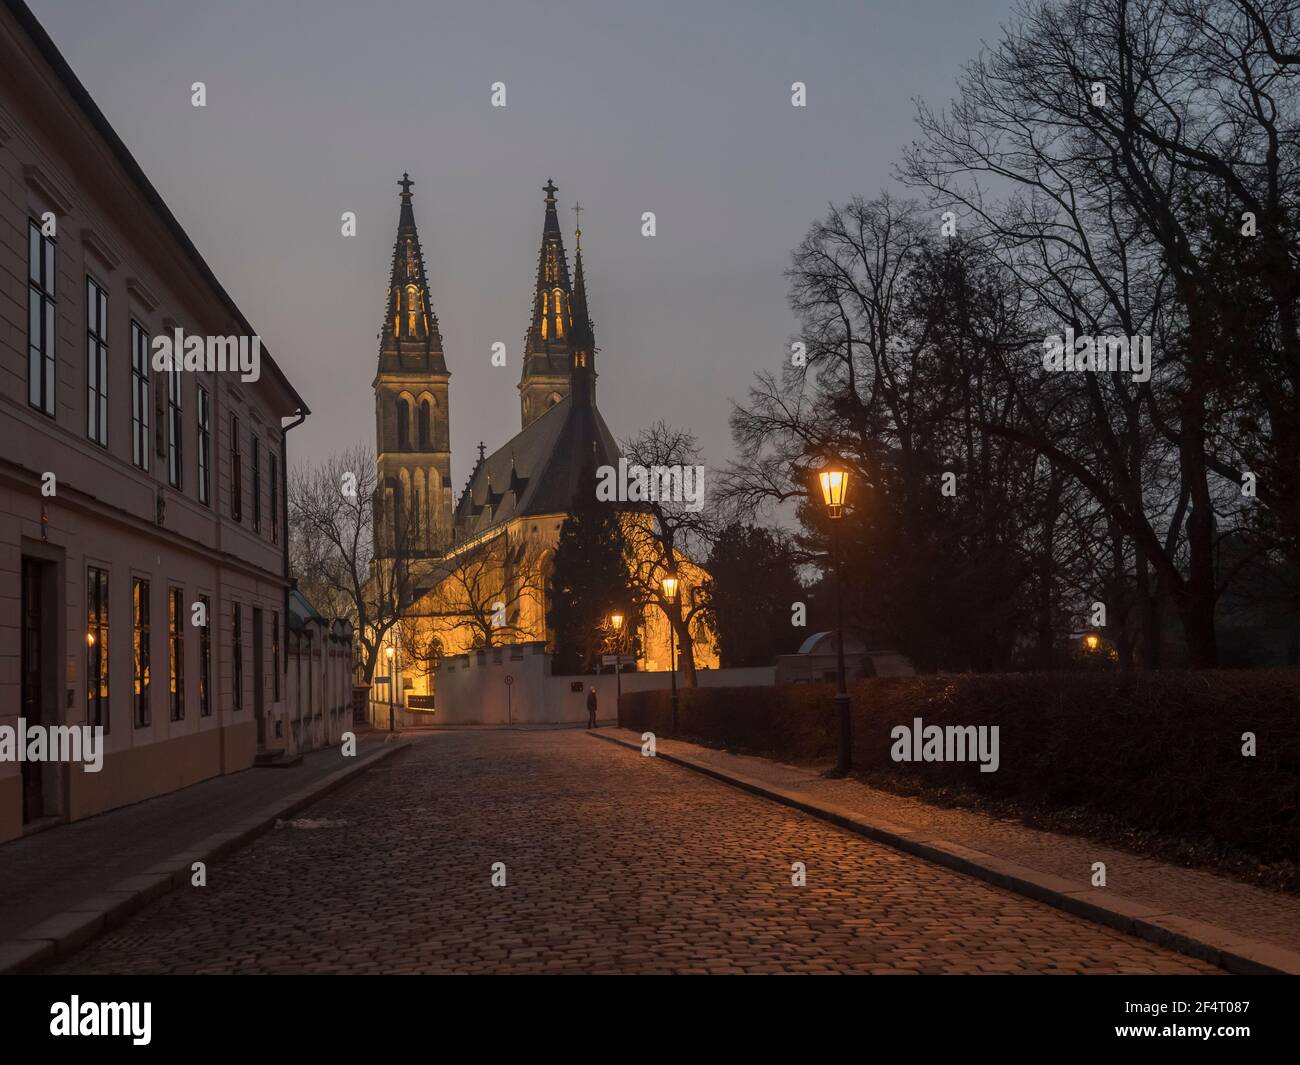 République tchèque, Prague, 23 février 2021 : Basilique illuminée Saint-Pierre-et-Paul, cathédrale gothique sur Vysehrad. Rue pavée la nuit Banque D'Images